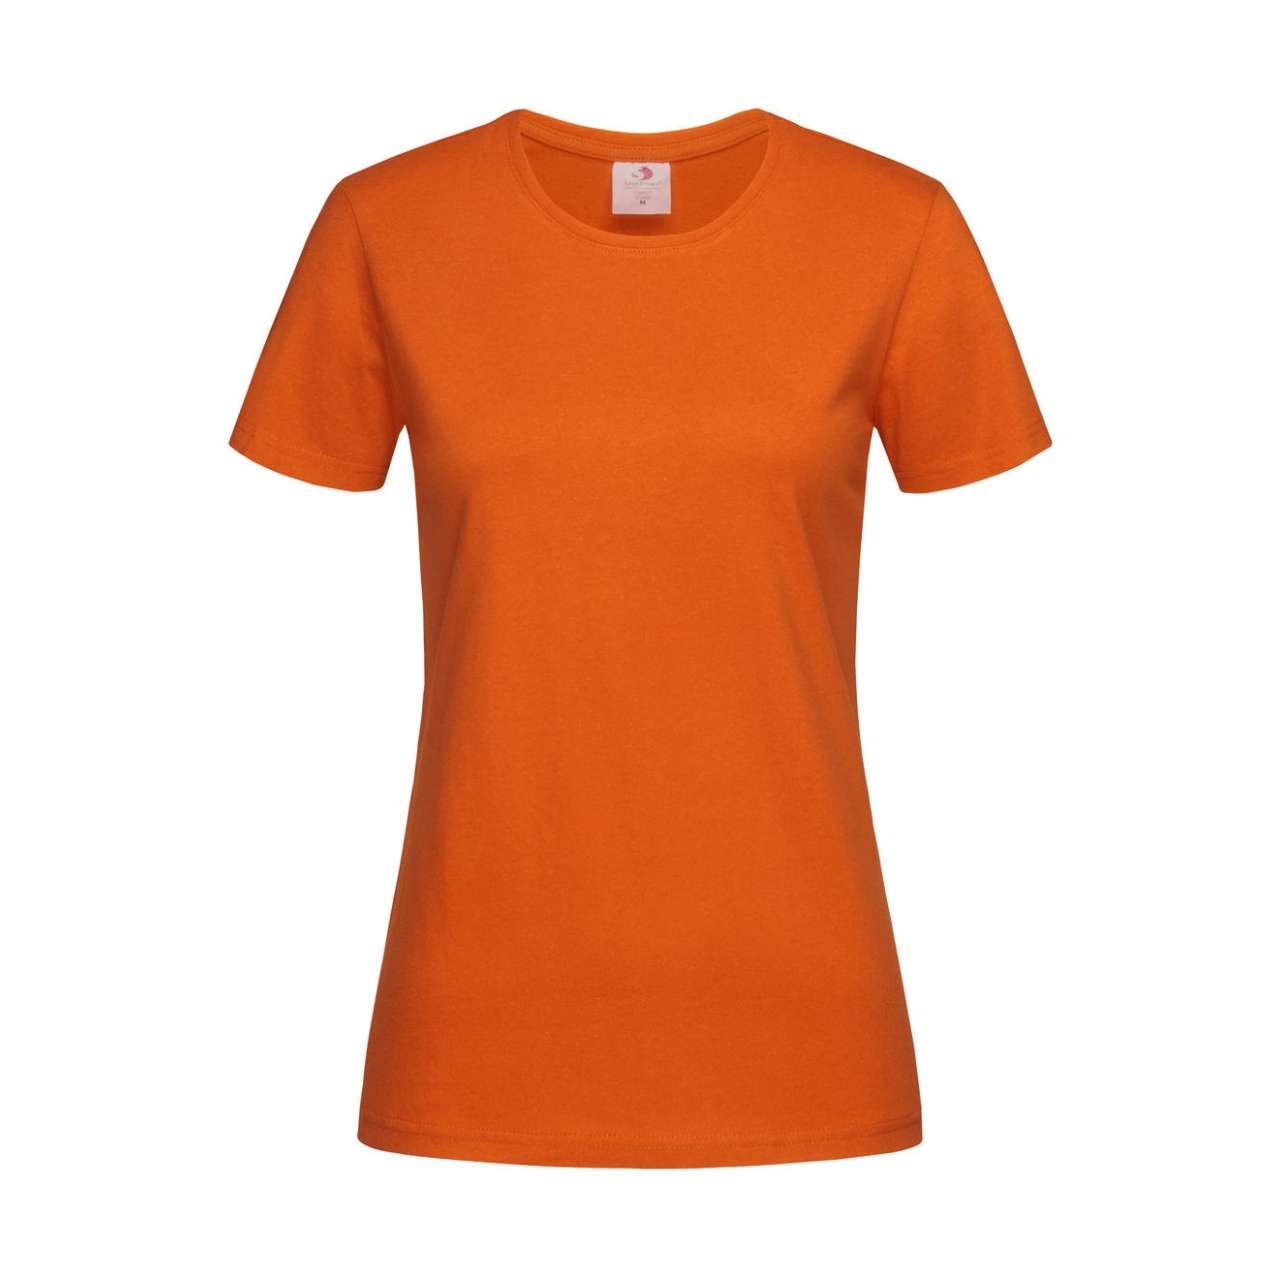 Tričko dámské Stedman Fitted s kulatým výstřihem - oranžové, M